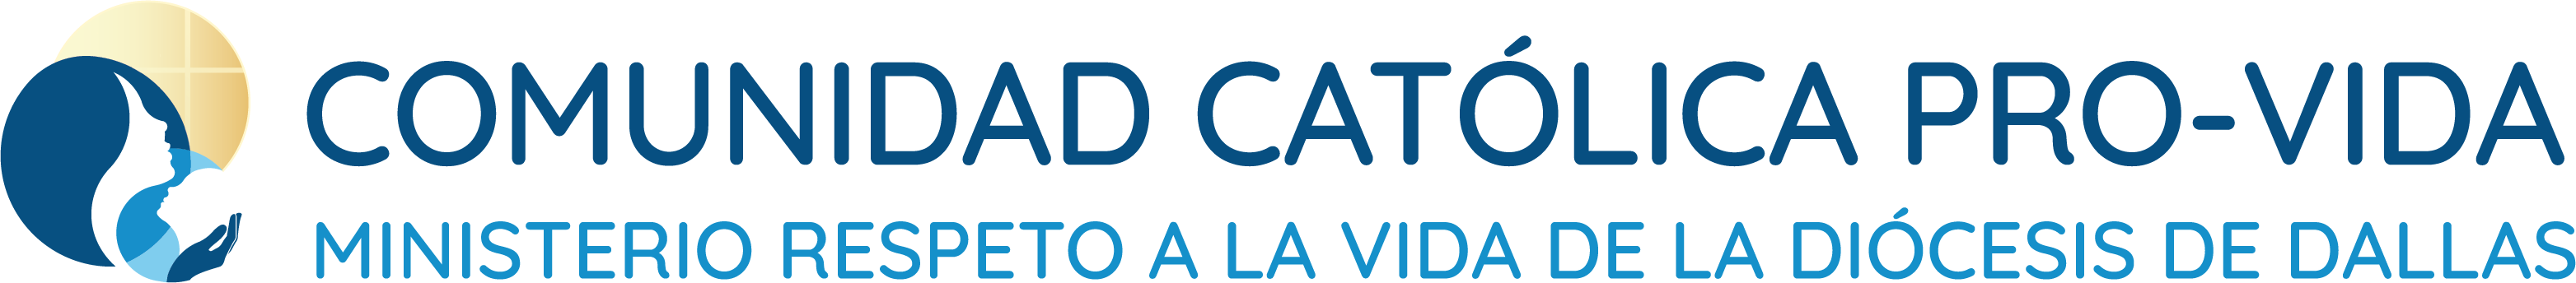 2020-logo-spanish.png